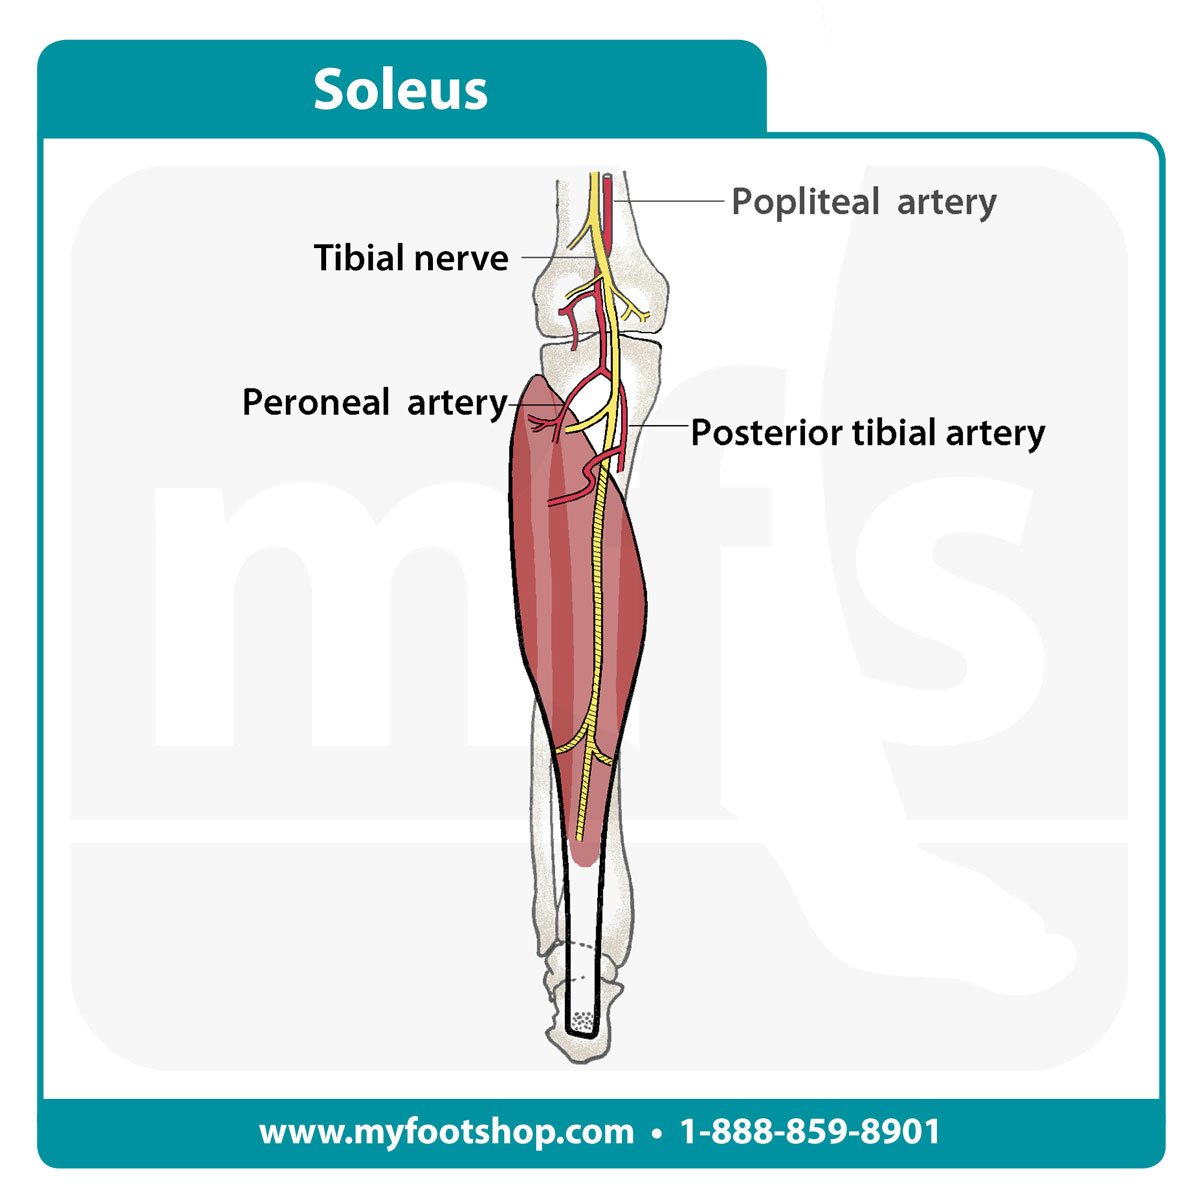 Soleus muscle